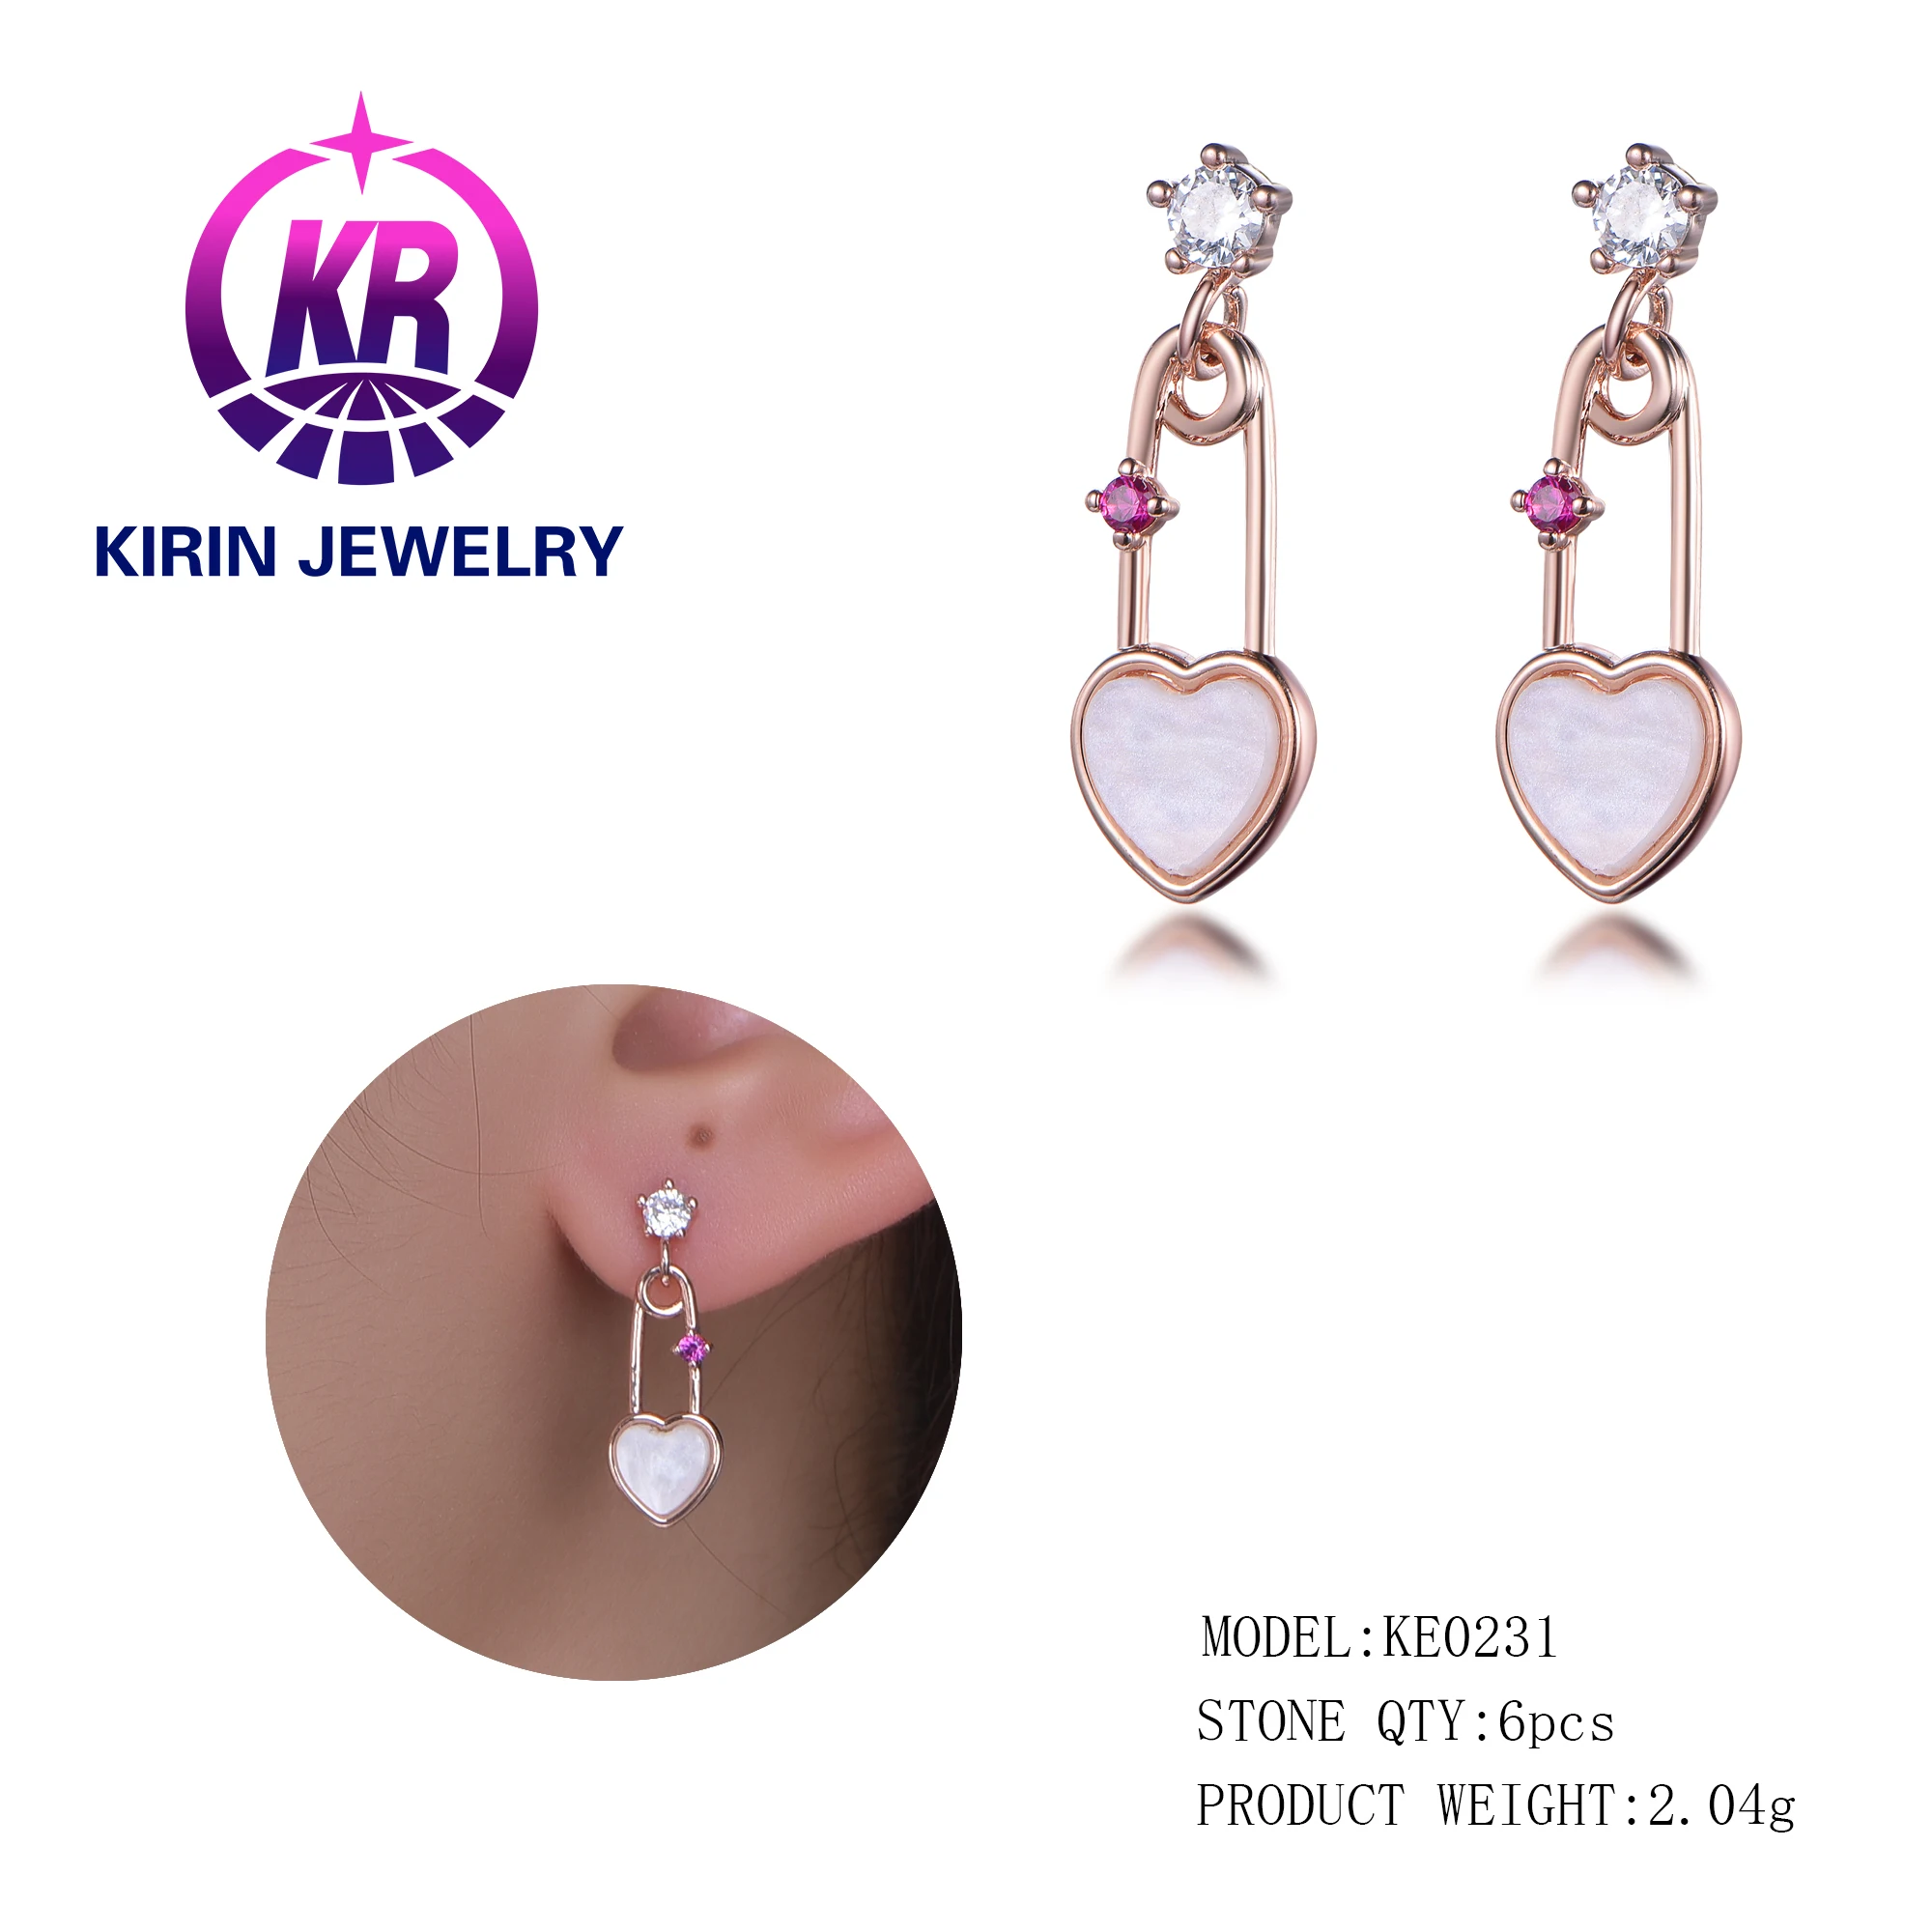 21524 earring hip hop sterling silver pendant earring for Women jewelry sterling silver ear ring 925 sterling silver earrings